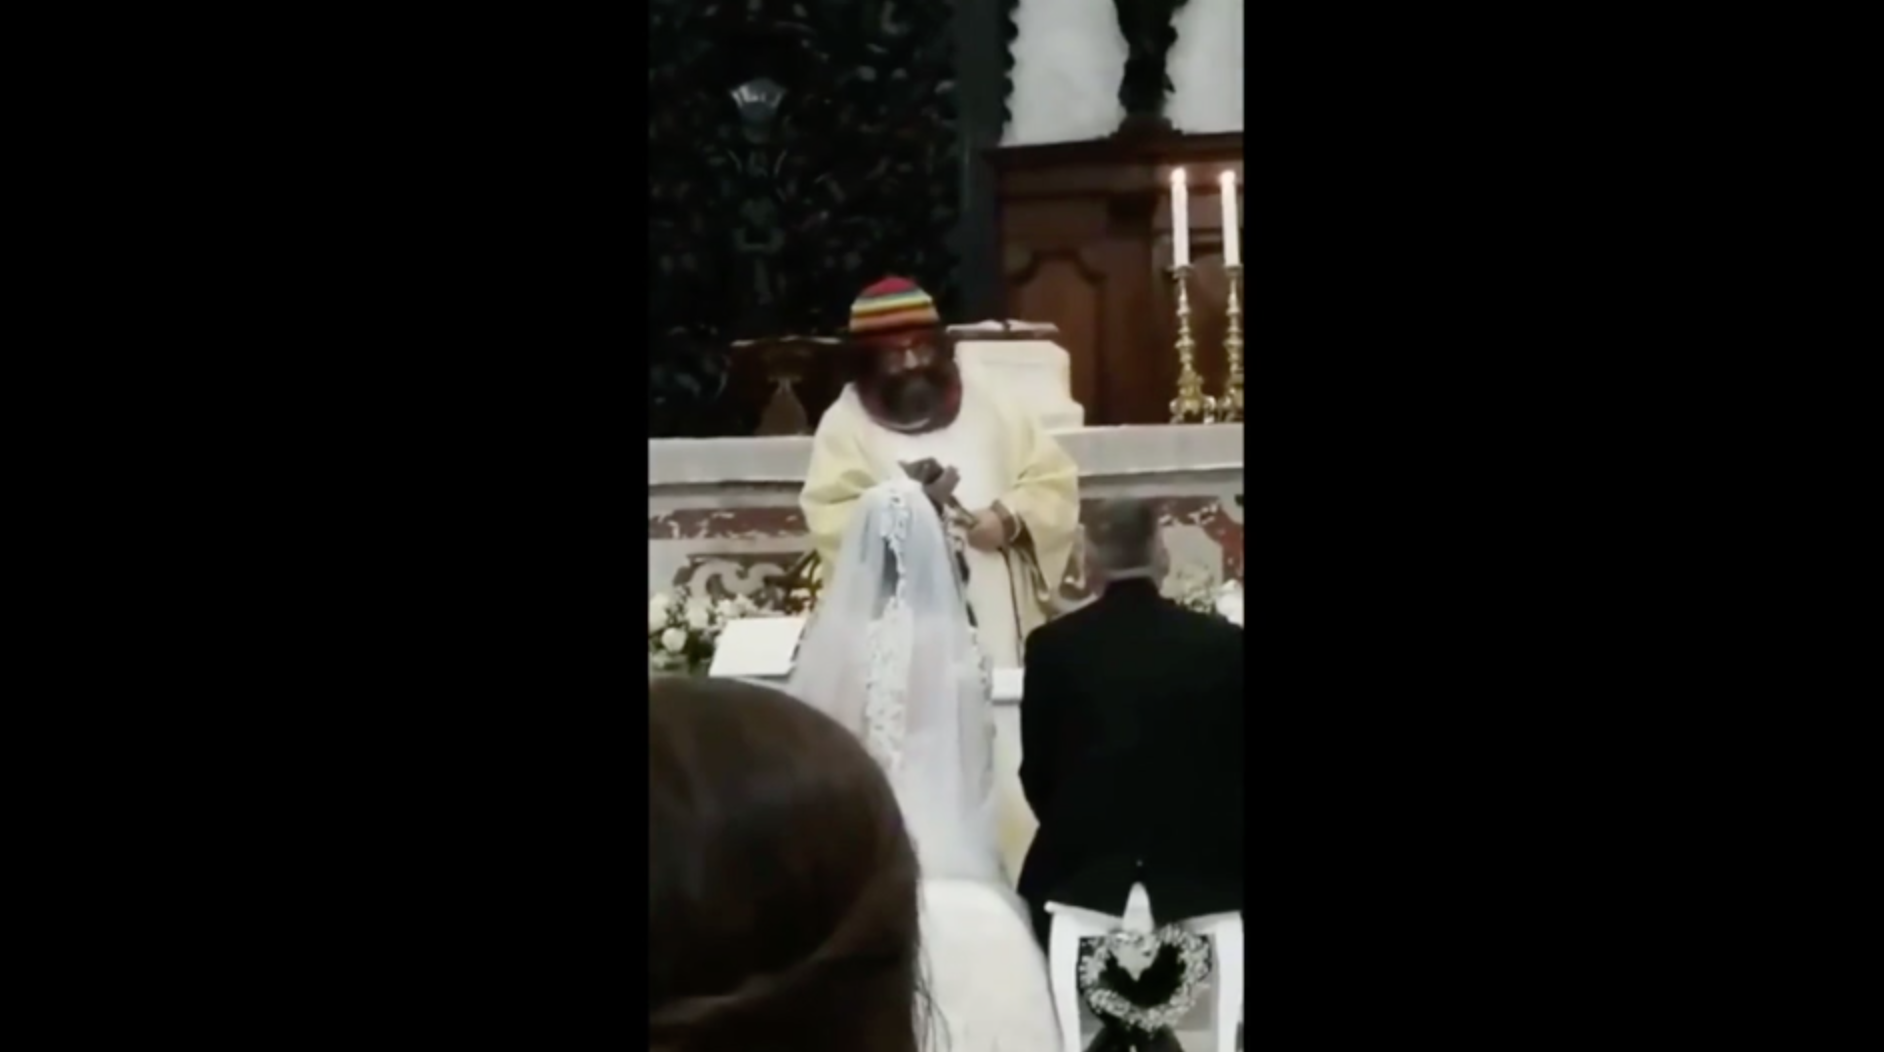 Il prete celebra le nozze sulle note di Jovanotti, ”Oh Vita” al posto dell’ Ave o Maria (IL VIDEO)